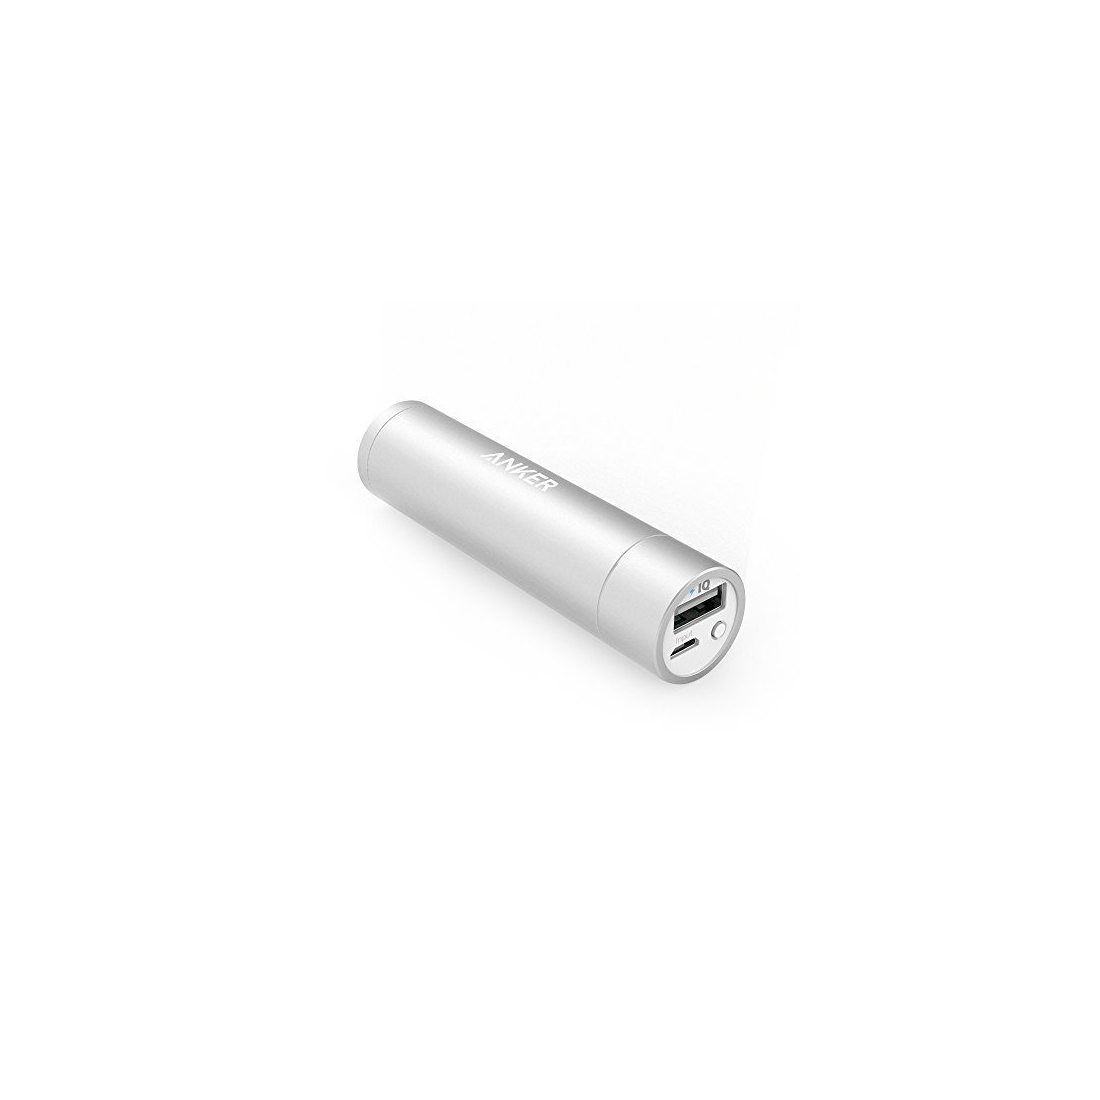 [Nouveauté] Anker PowerCore+ mini Batterie Externe Portable Ultra-Compacte 3350mAh pour iPhone 6 / 6 Plus, iPad Air 2 / mini 